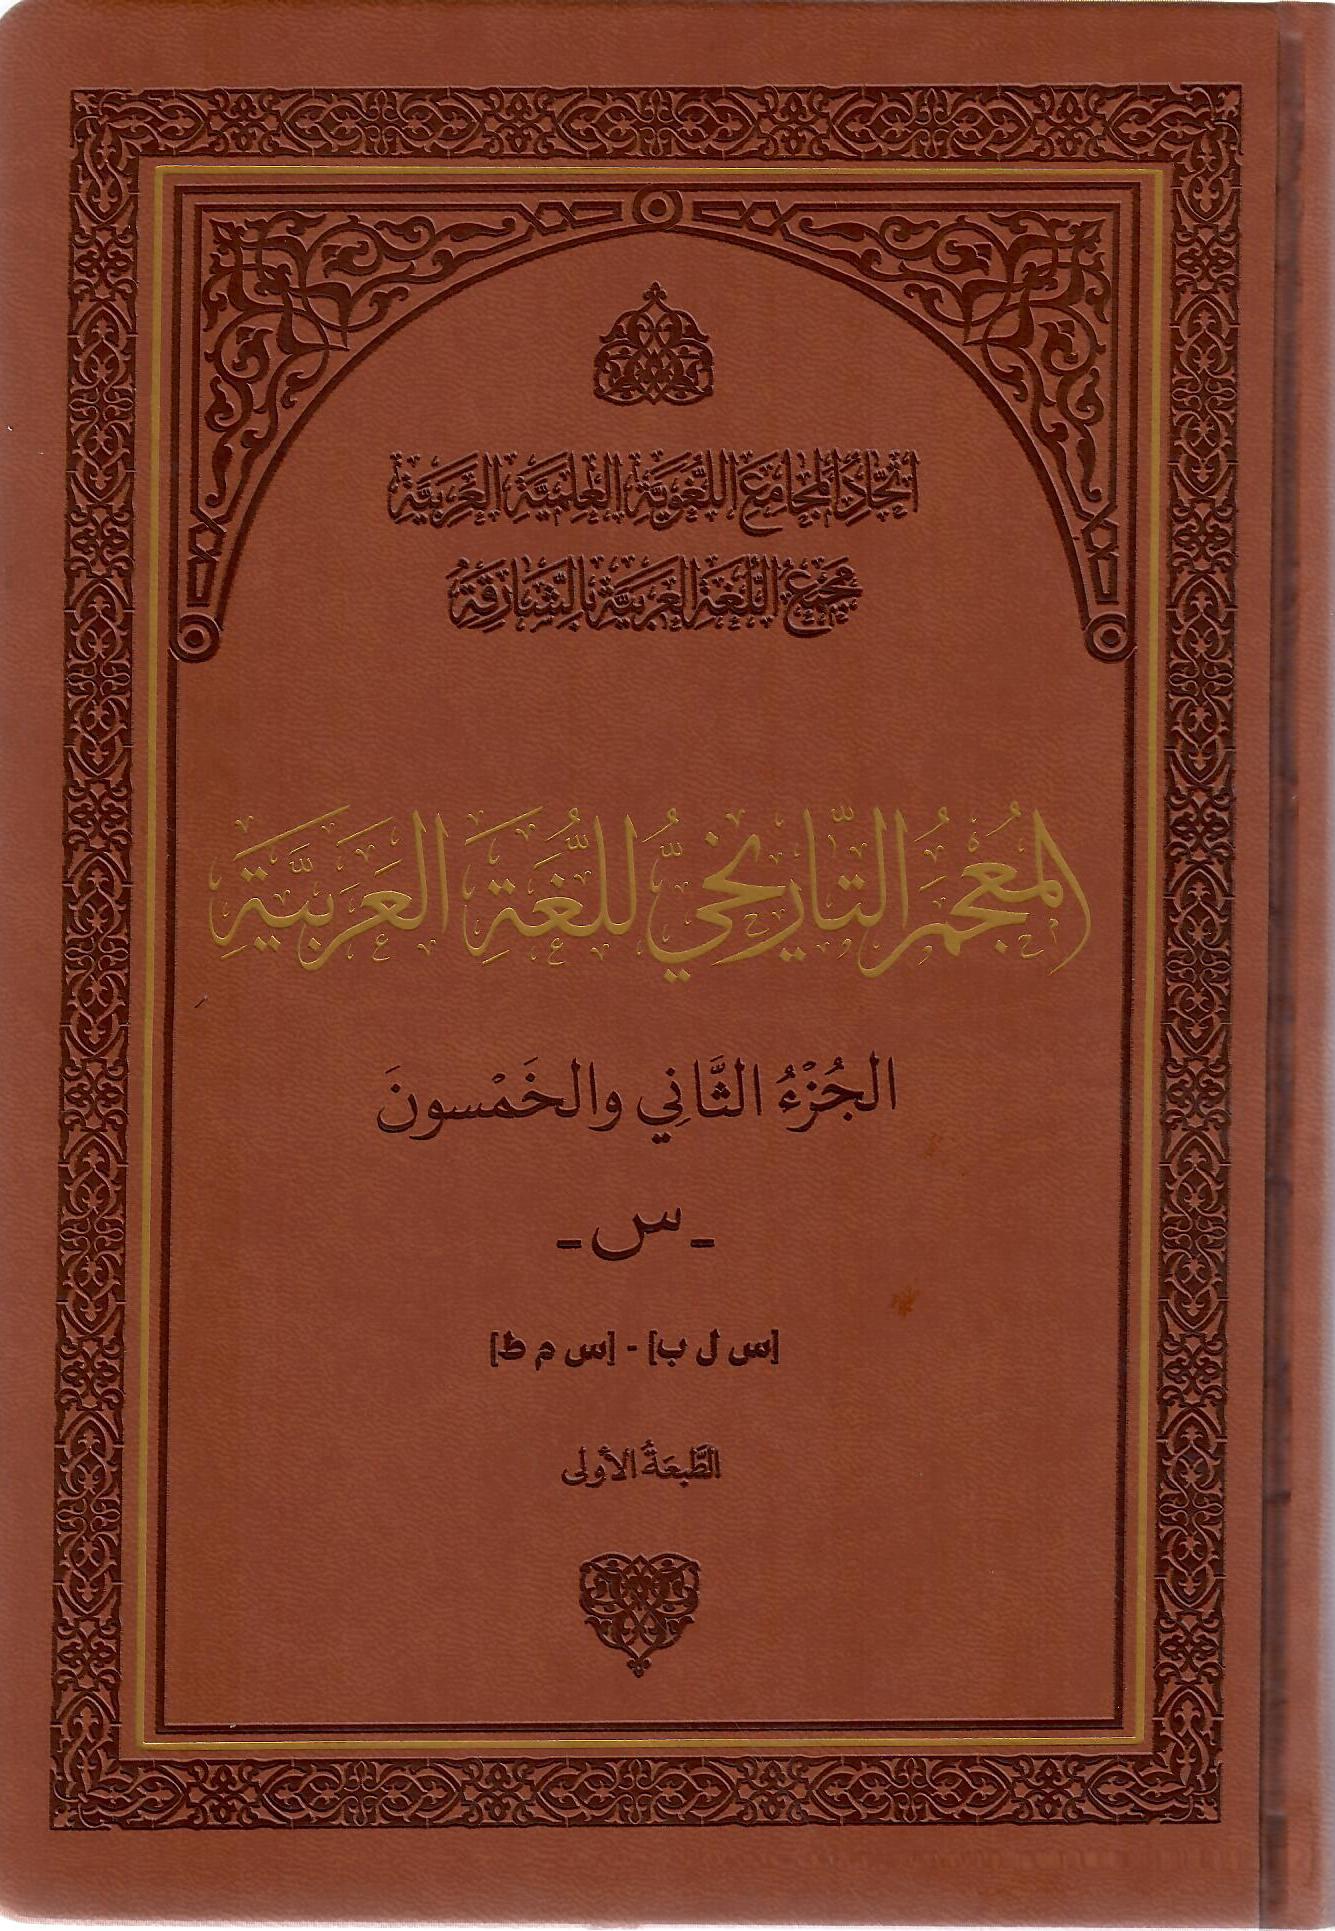 المعجم التاريخي للغة العربية الجزء الثاني والخمسون